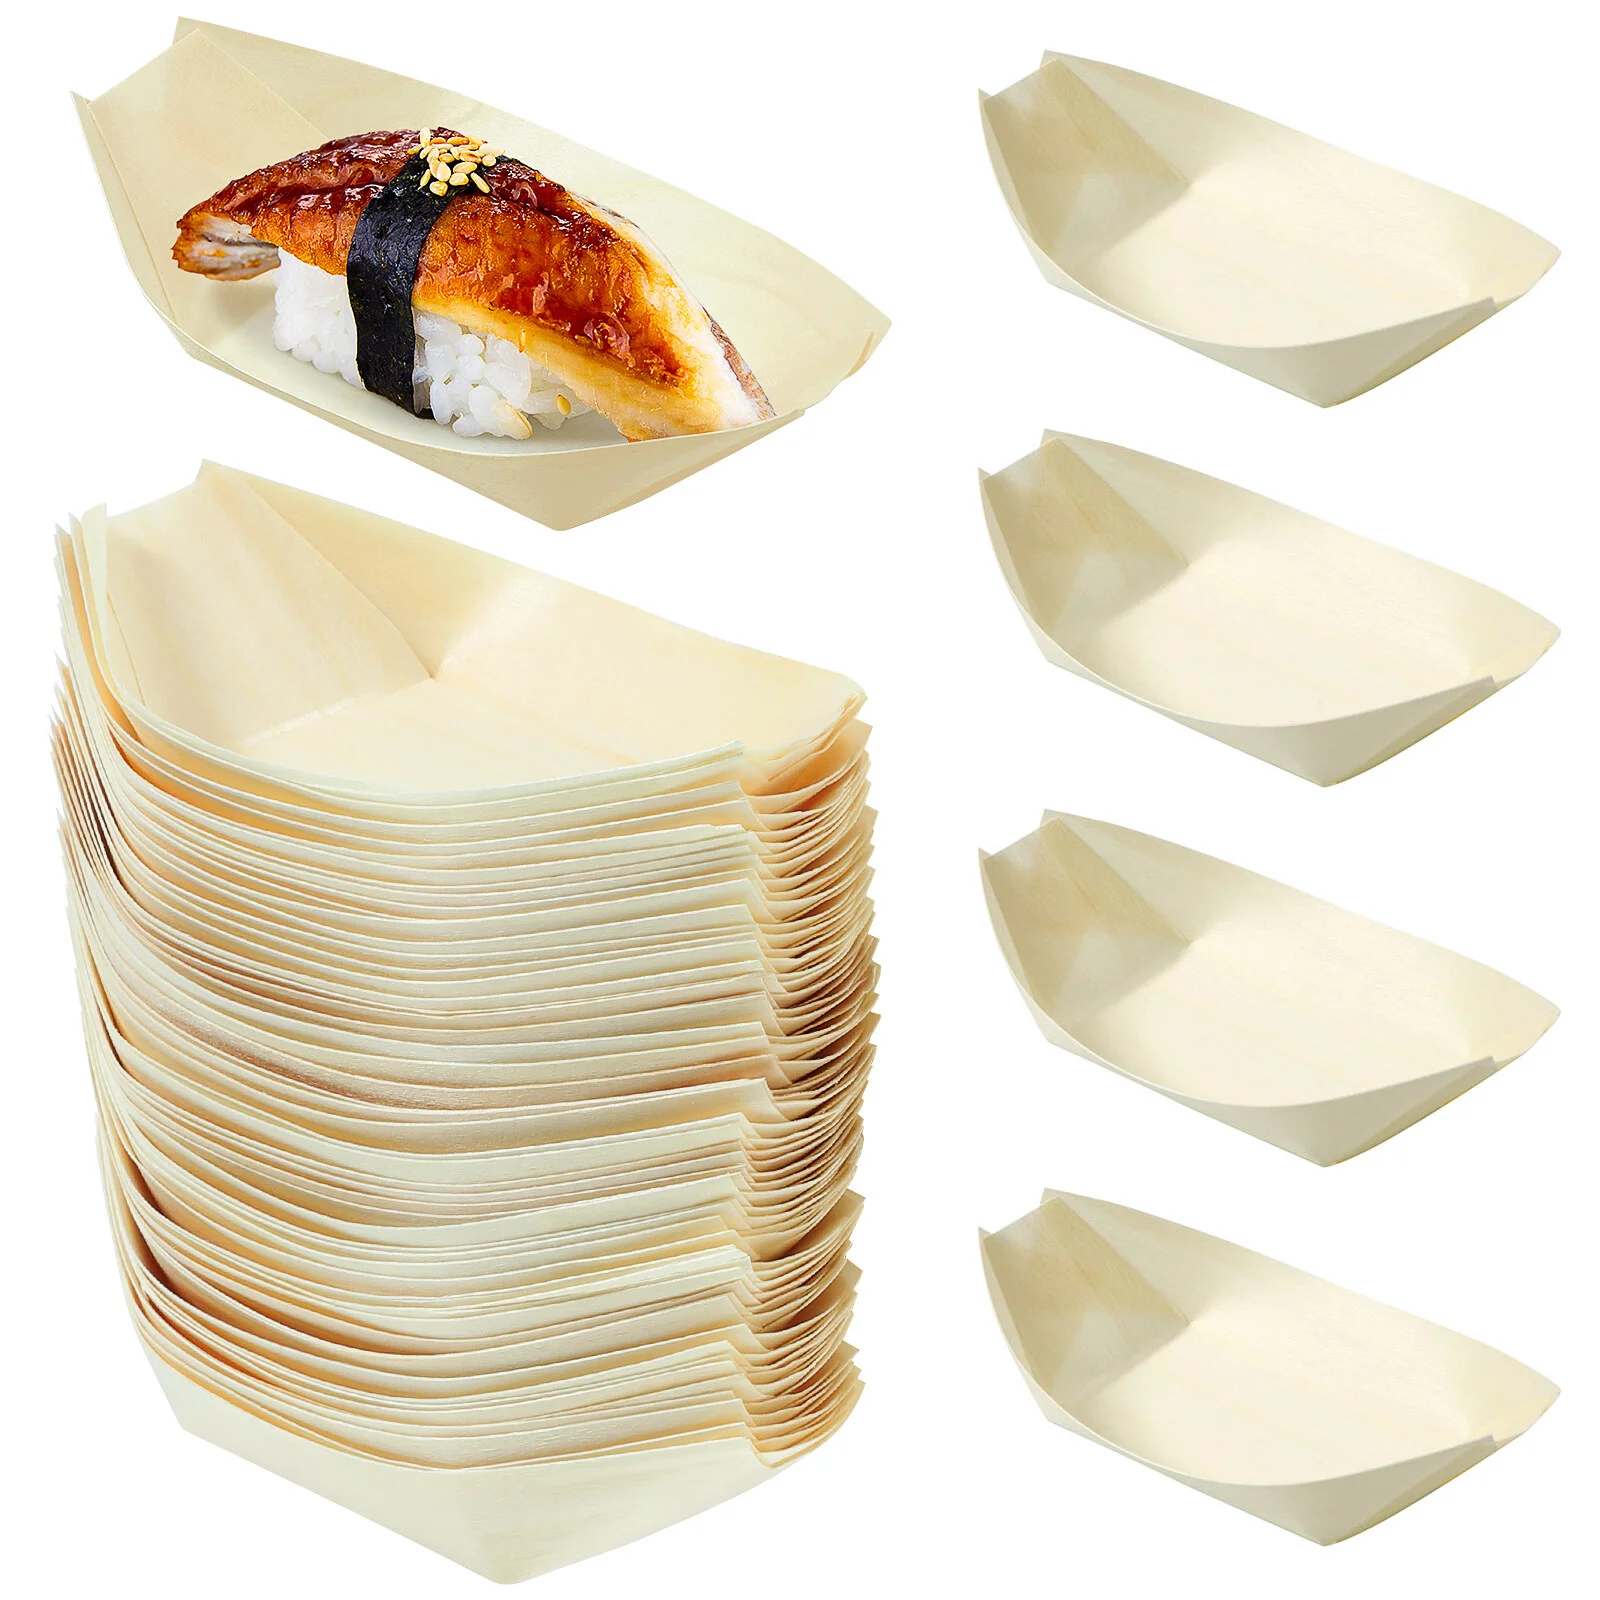 

Лодка для суши с жареным сыром, одноразовый поднос, деревянный контейнер, Сервировочные деревянные бамбуковые миски для еды